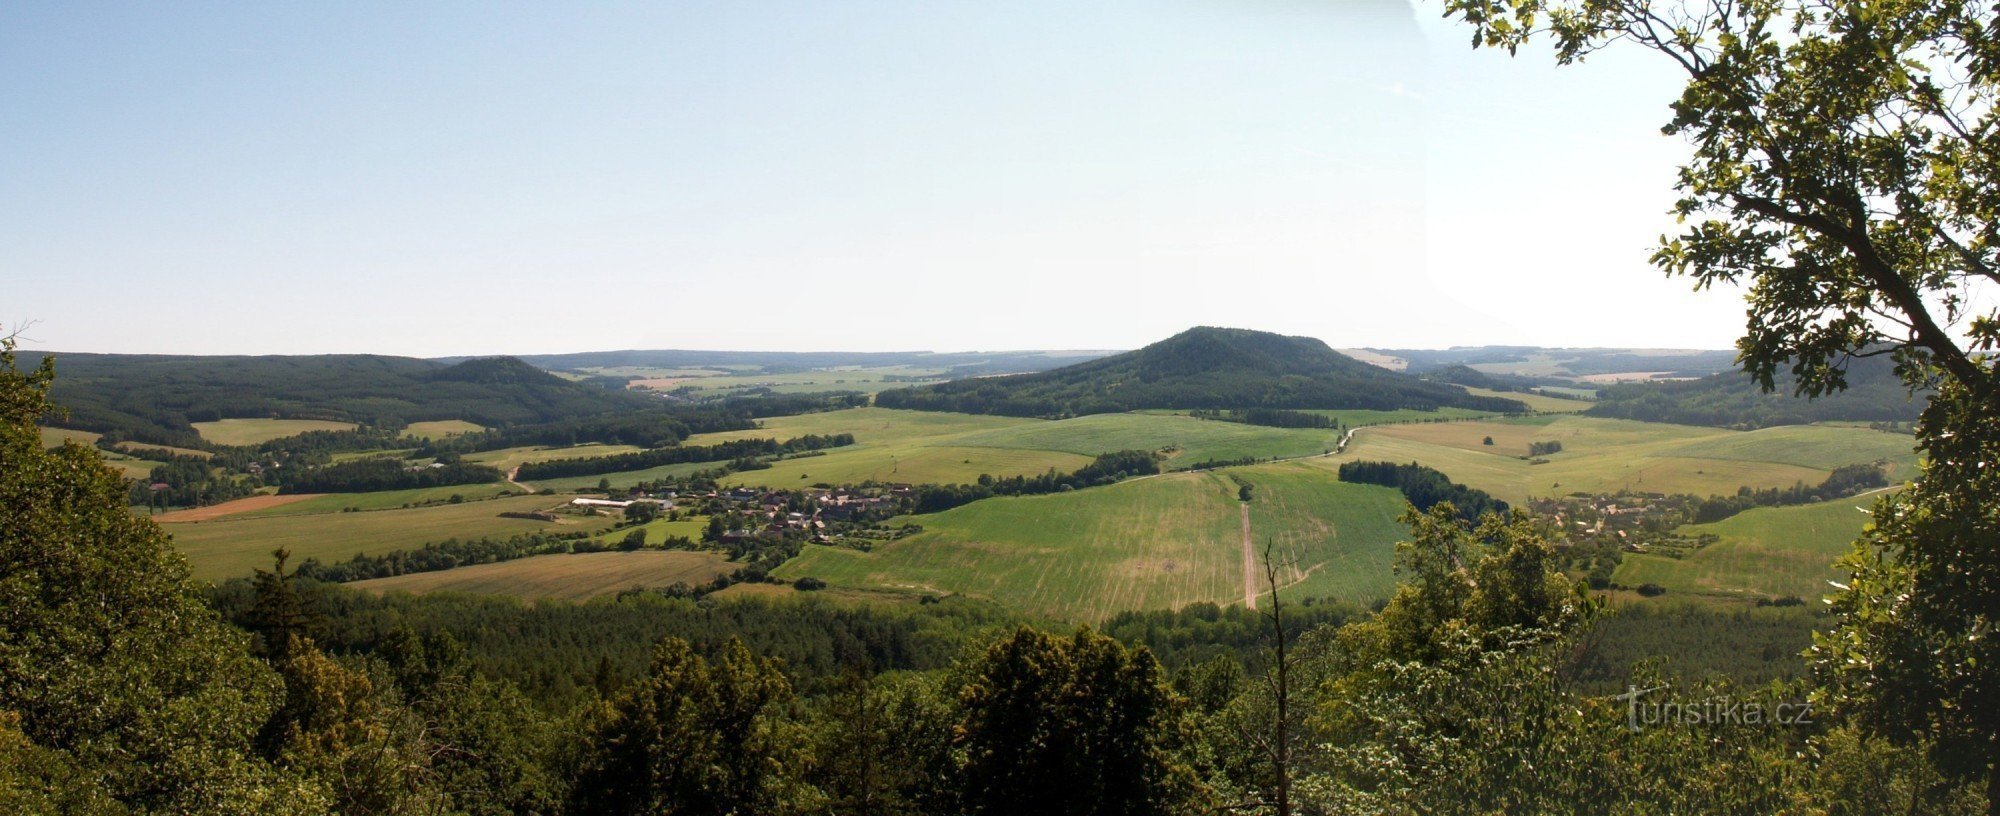 Uma vista da paisagem da região de Manětín do ponto de vista